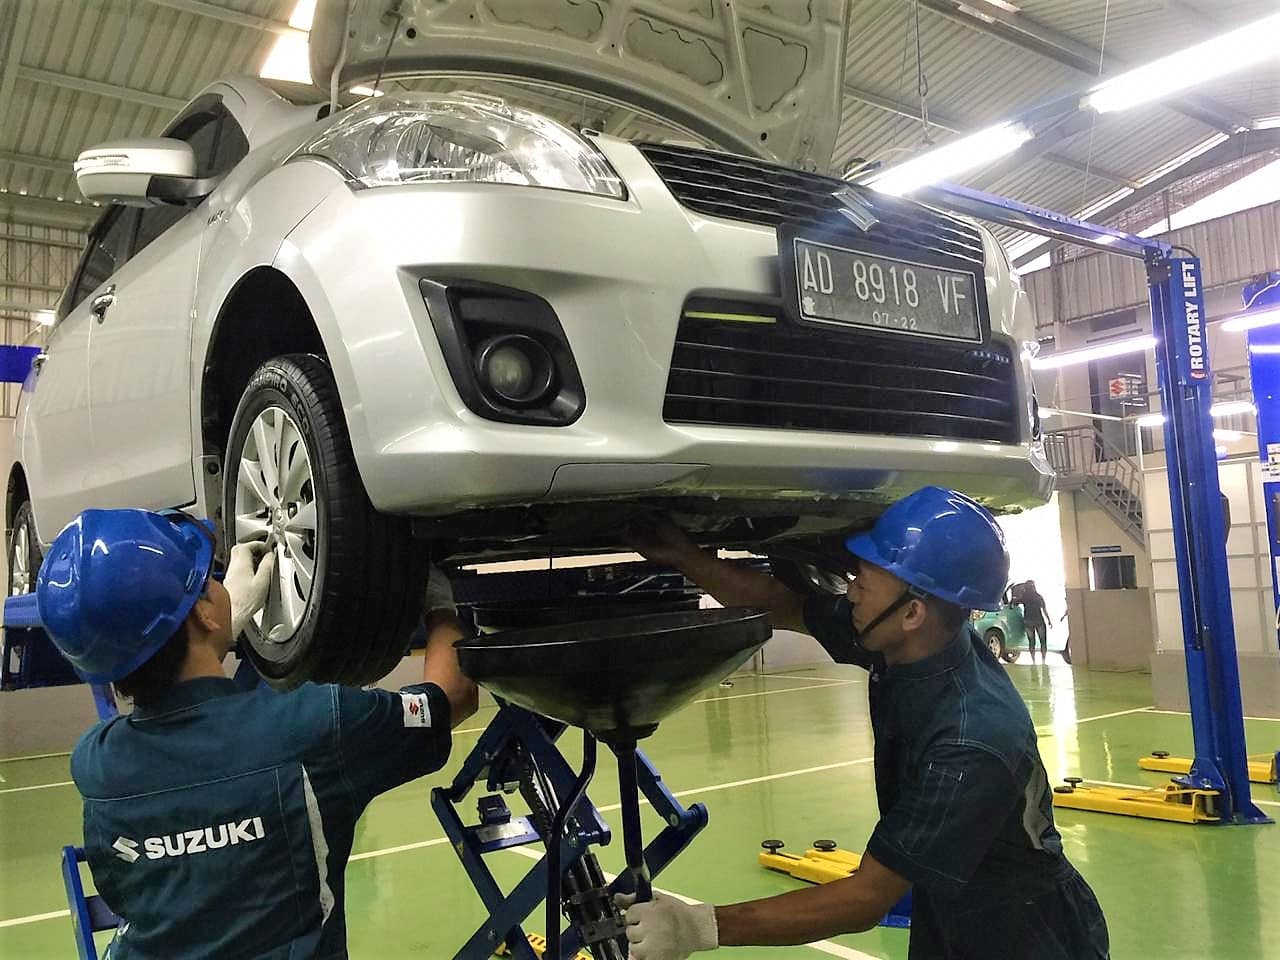 Suzuki Day Kini Hadir Di Kota Solo